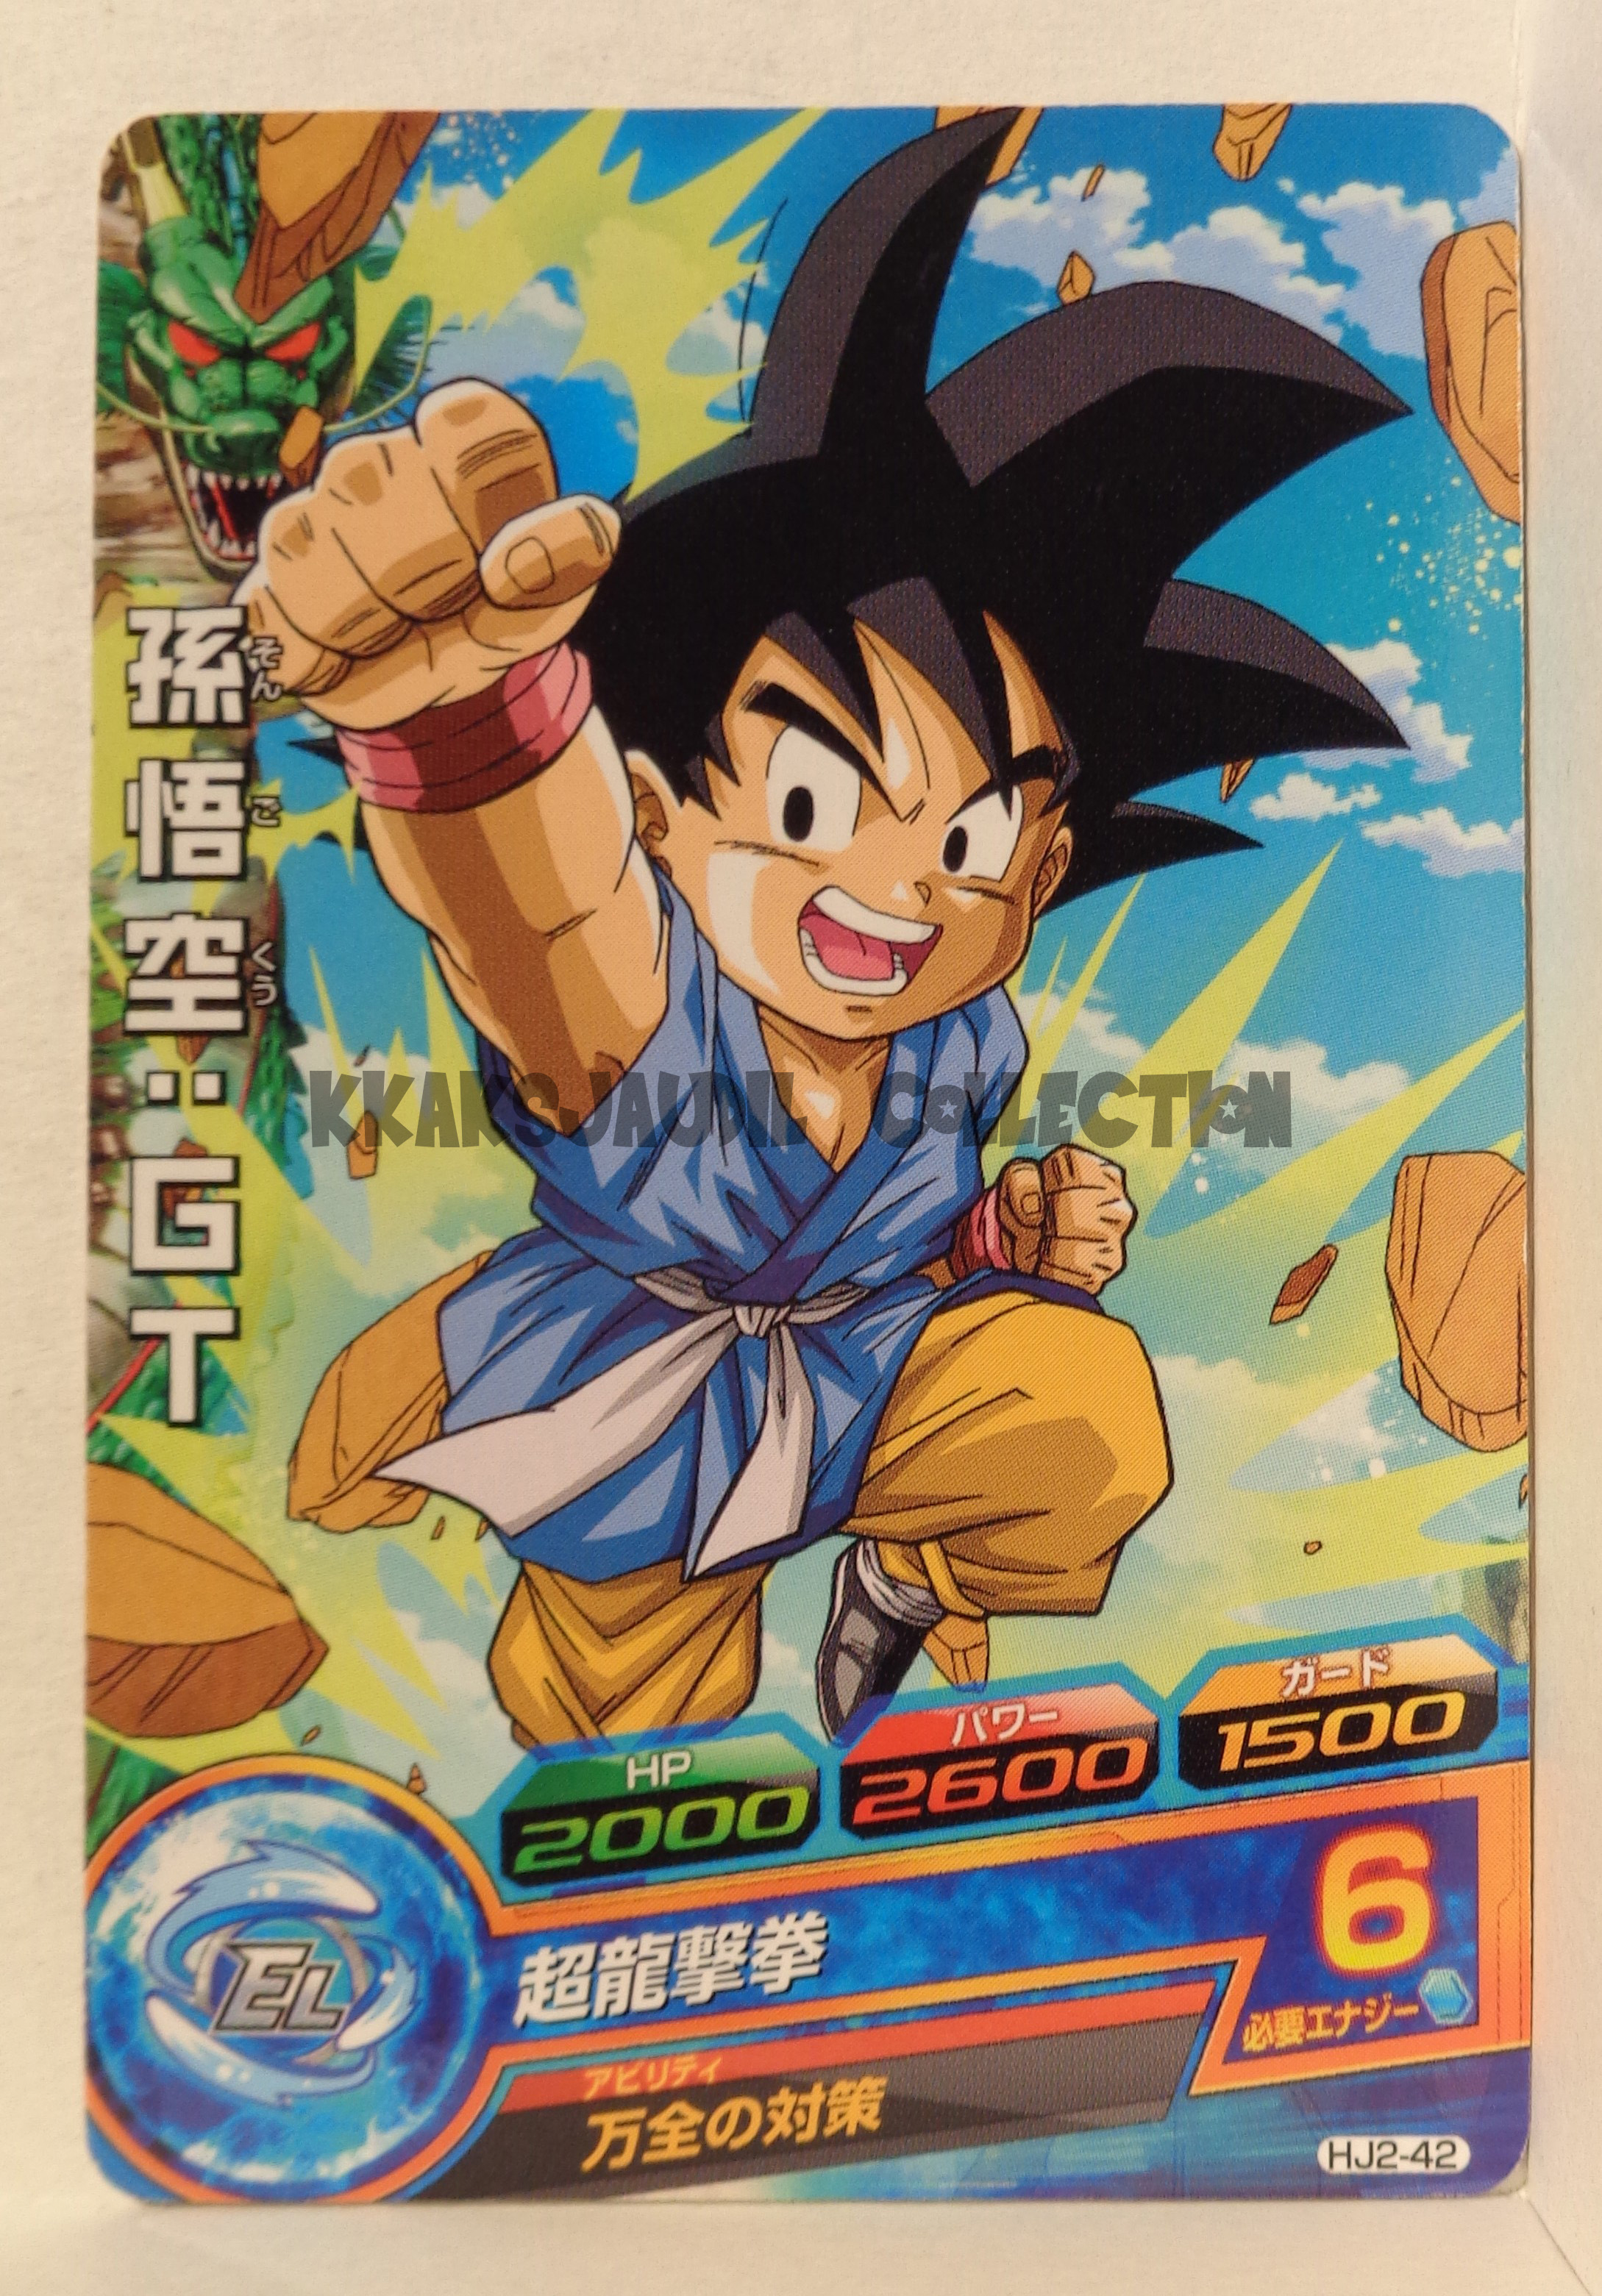 DB Heroes HJ2-42 Kid Goku